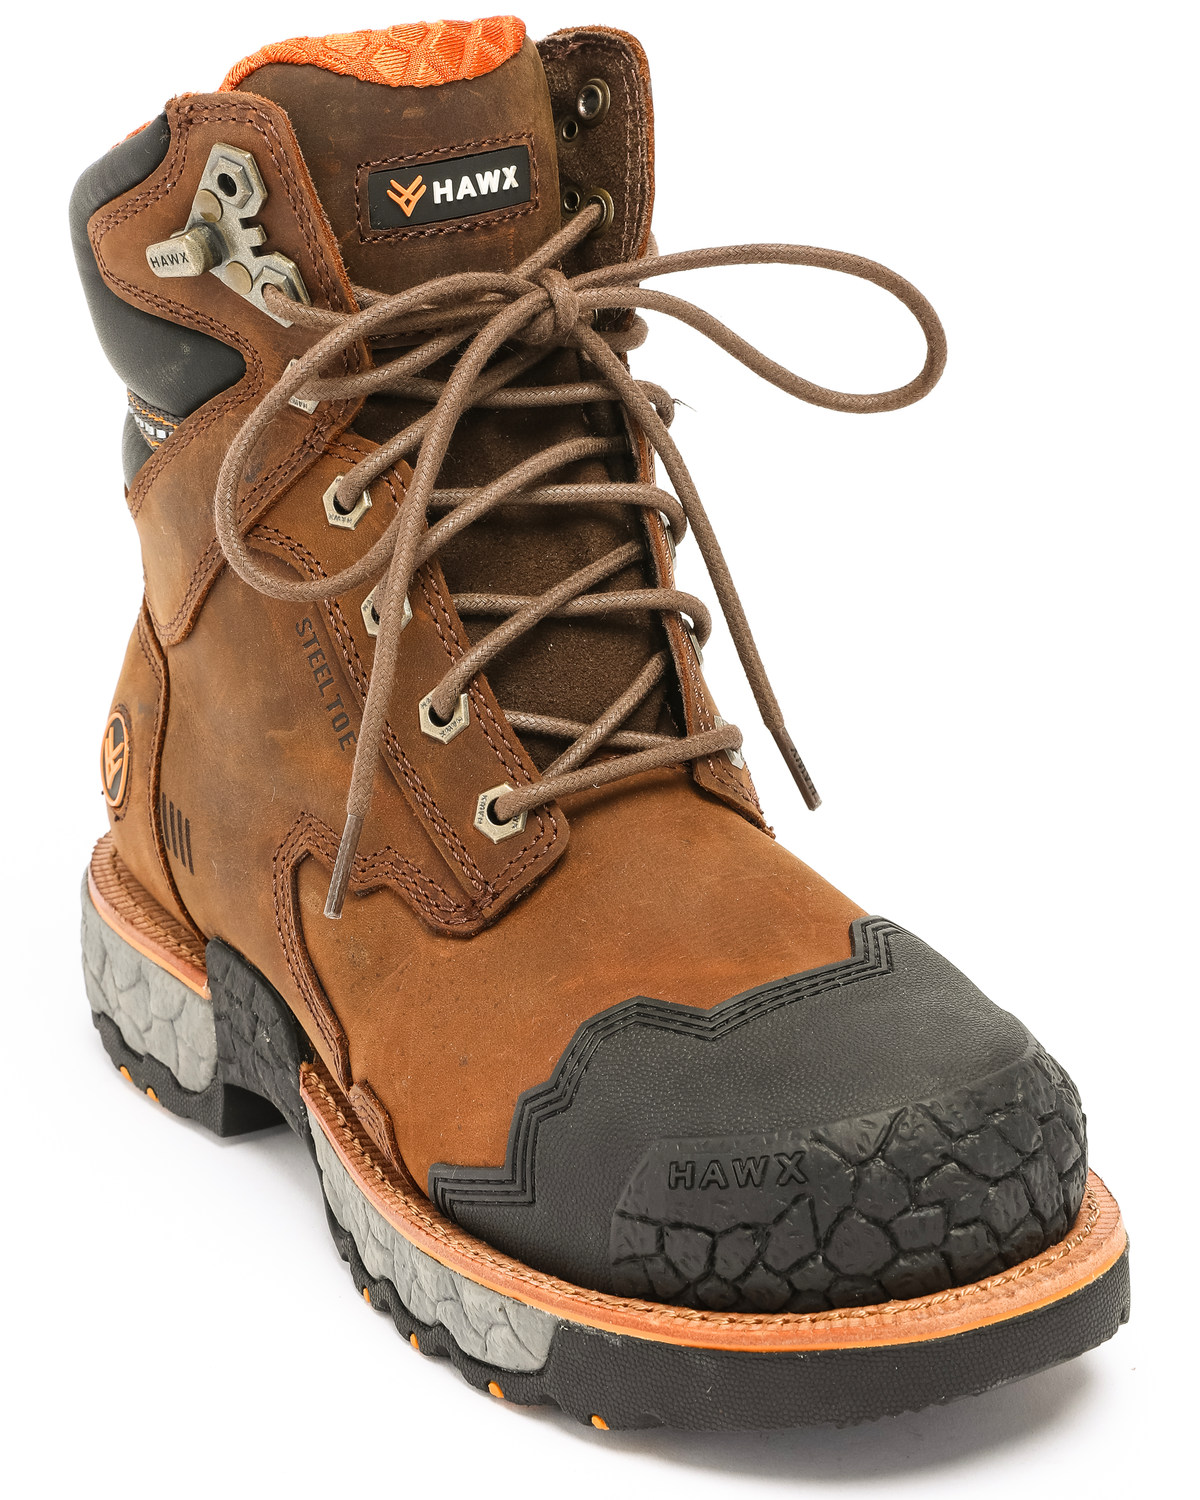 Hawx Men's 8" Legion Work Boots - Steel Toe